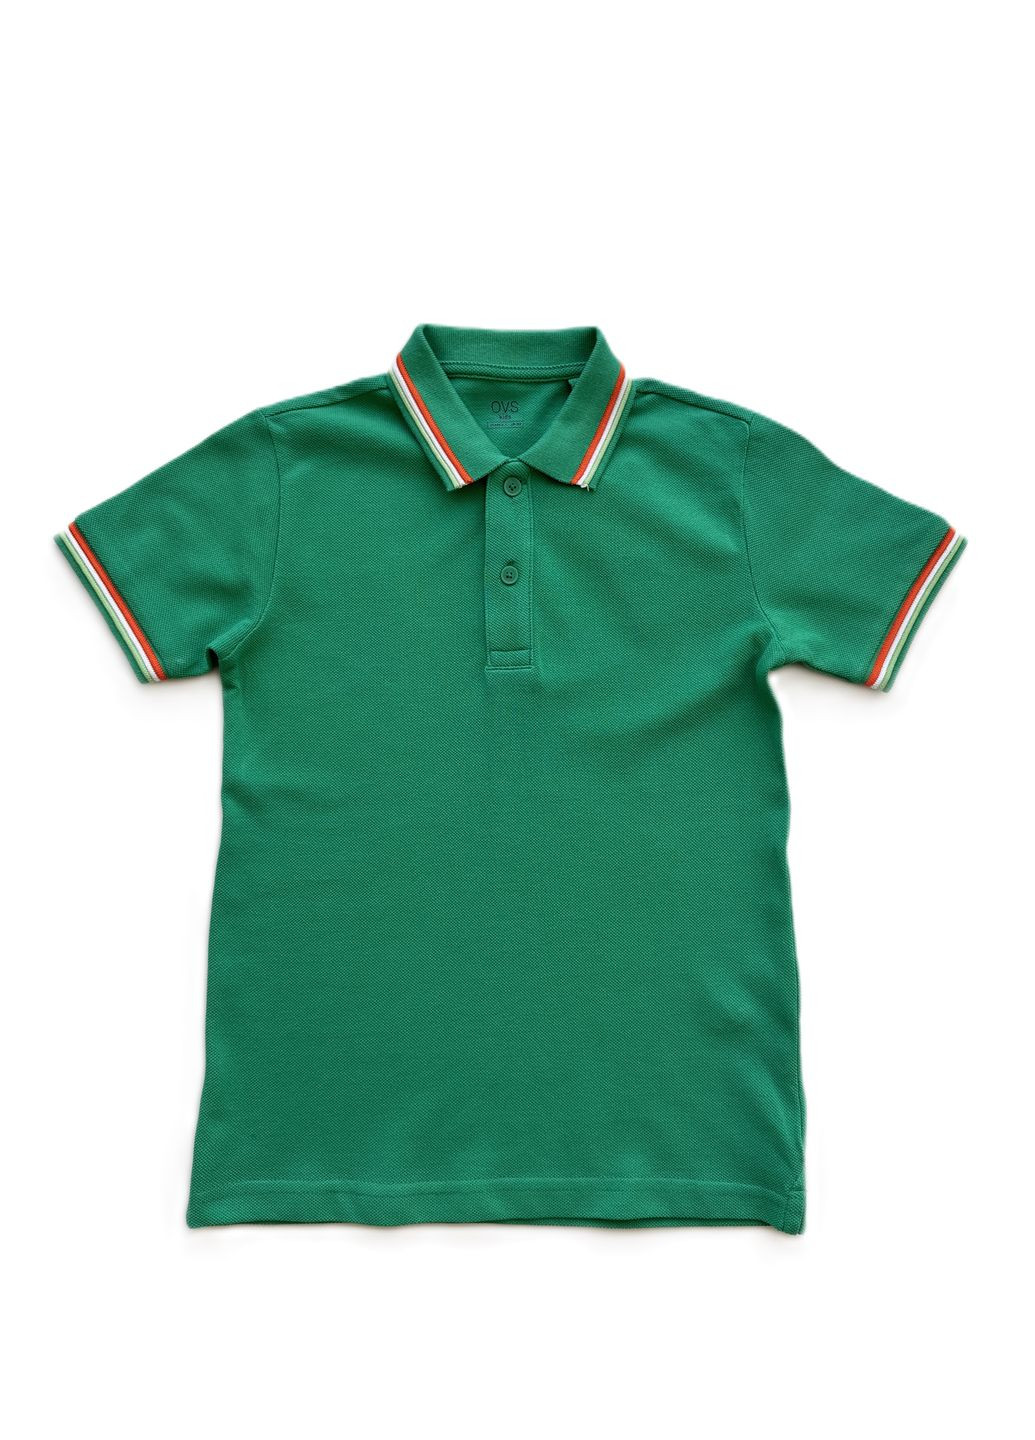 Зеленая детская футболка-футболка-поло для мальчика 2000-27 зеленый (122 см) для мальчика OVS однотонная